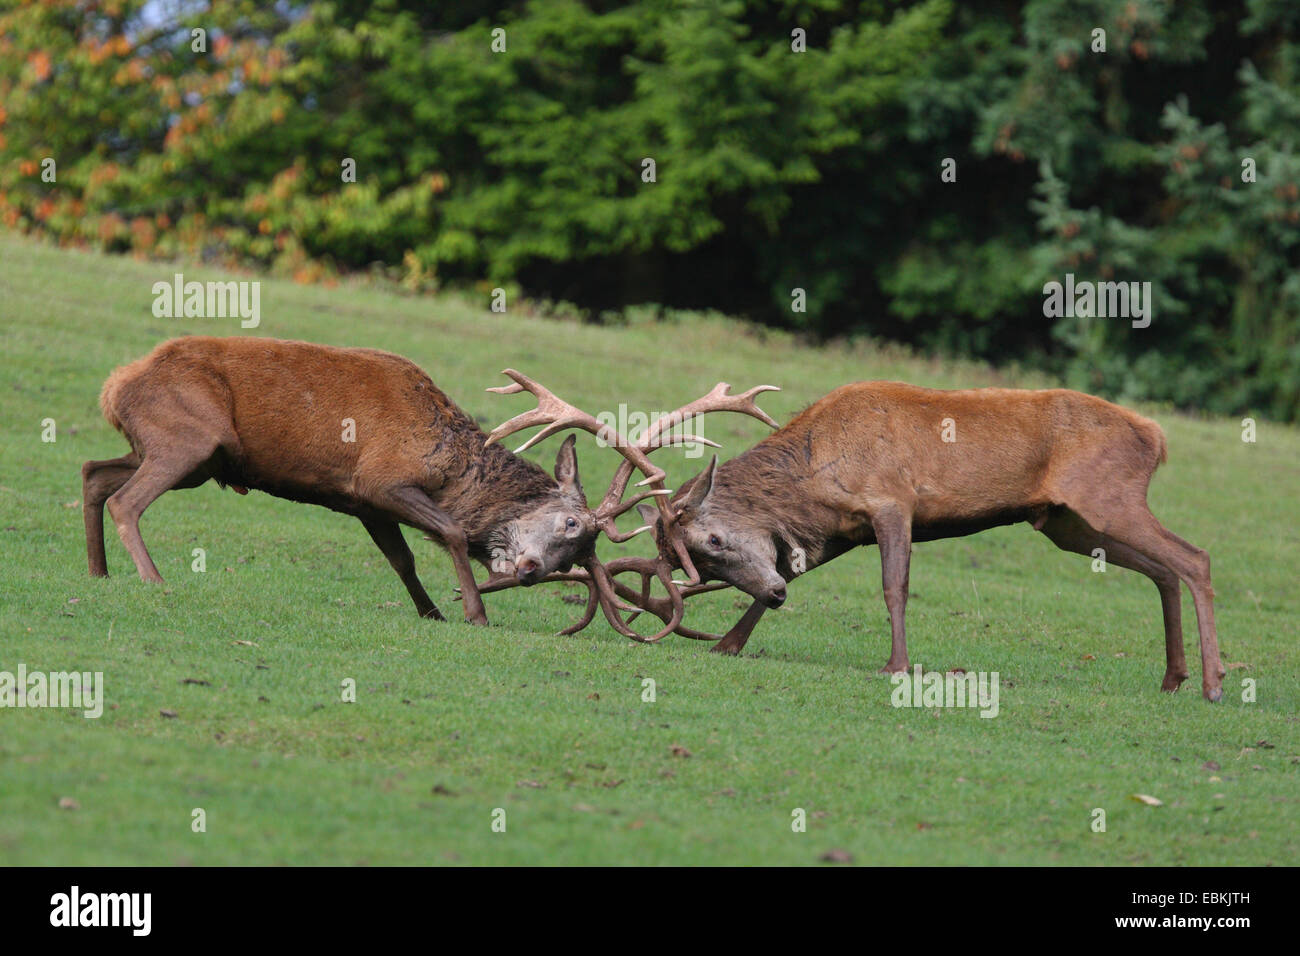 red deer (Cervus elaphus), fighting, Germany, Rhineland-Palatinate, Pfaelzer Wald Stock Photo